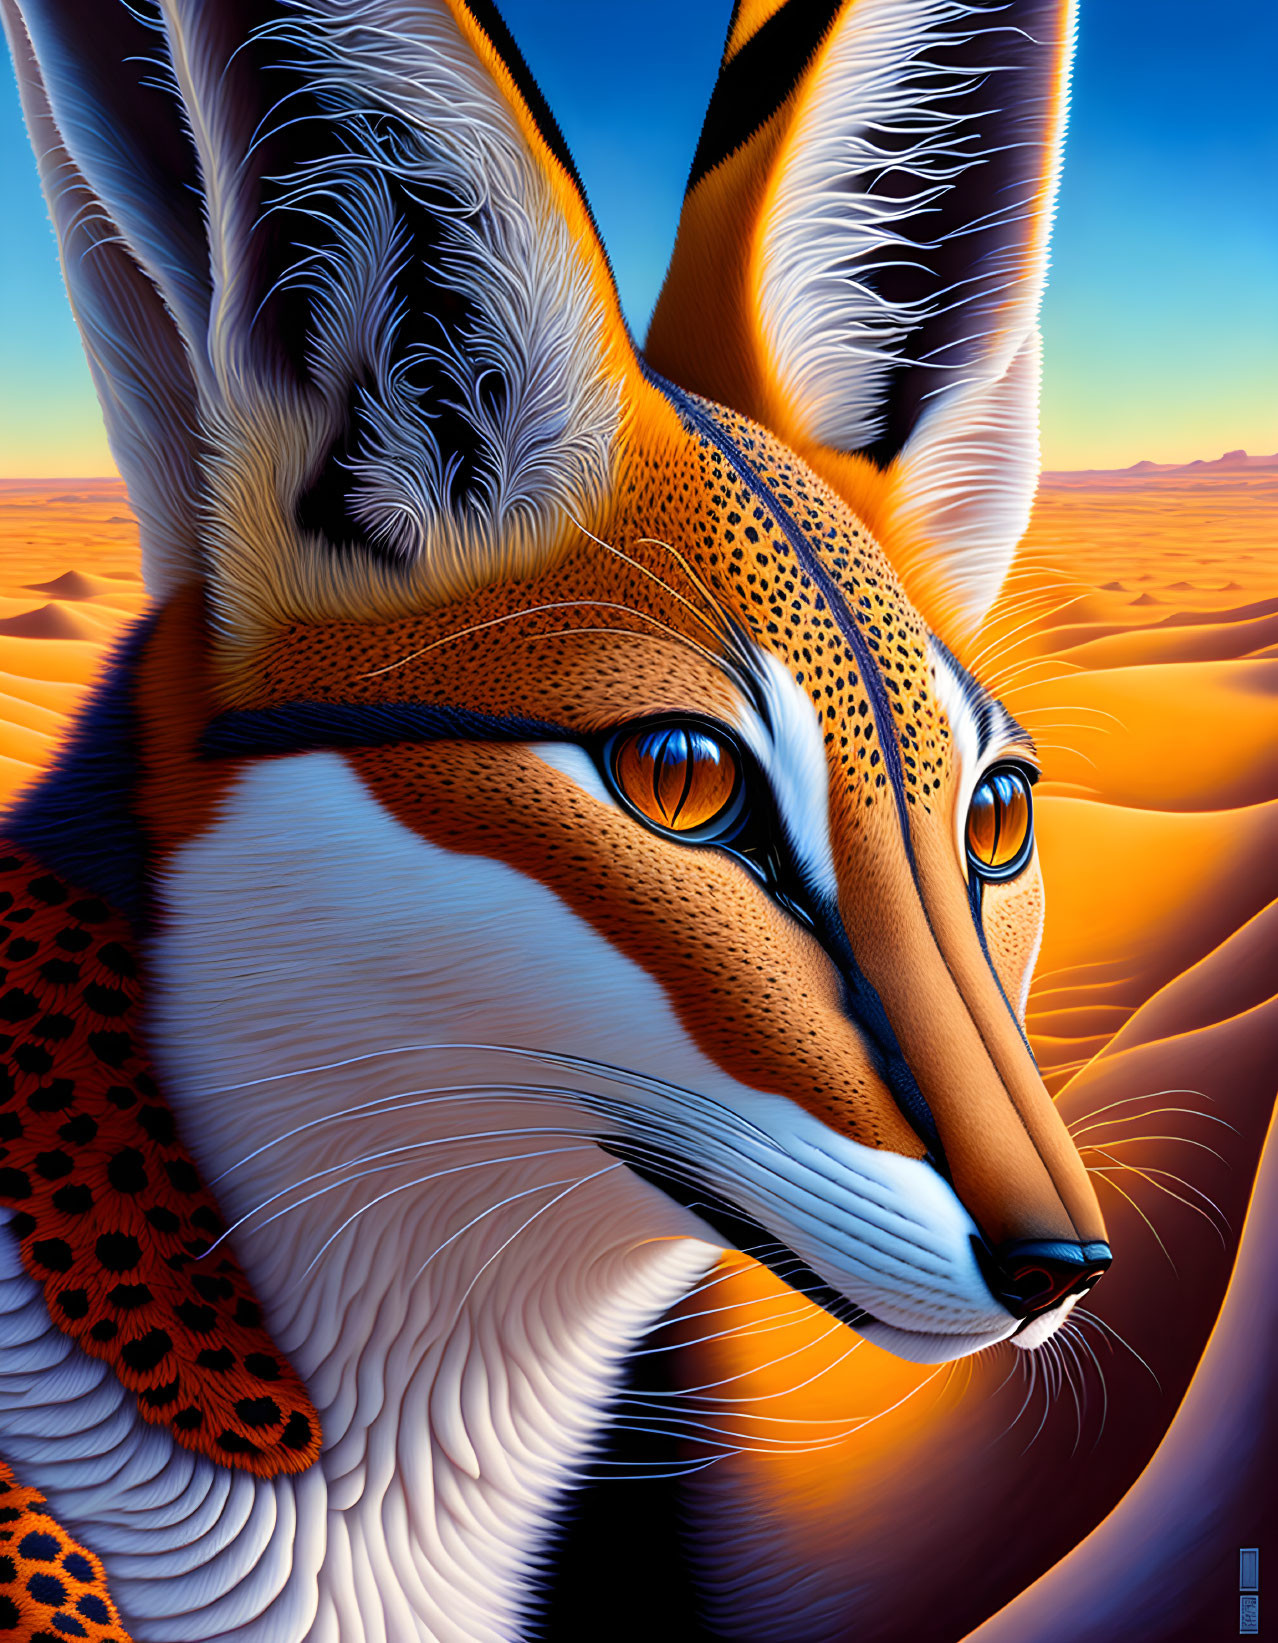 Detailed Stylized Fox Illustration in Sunset Desert Landscape